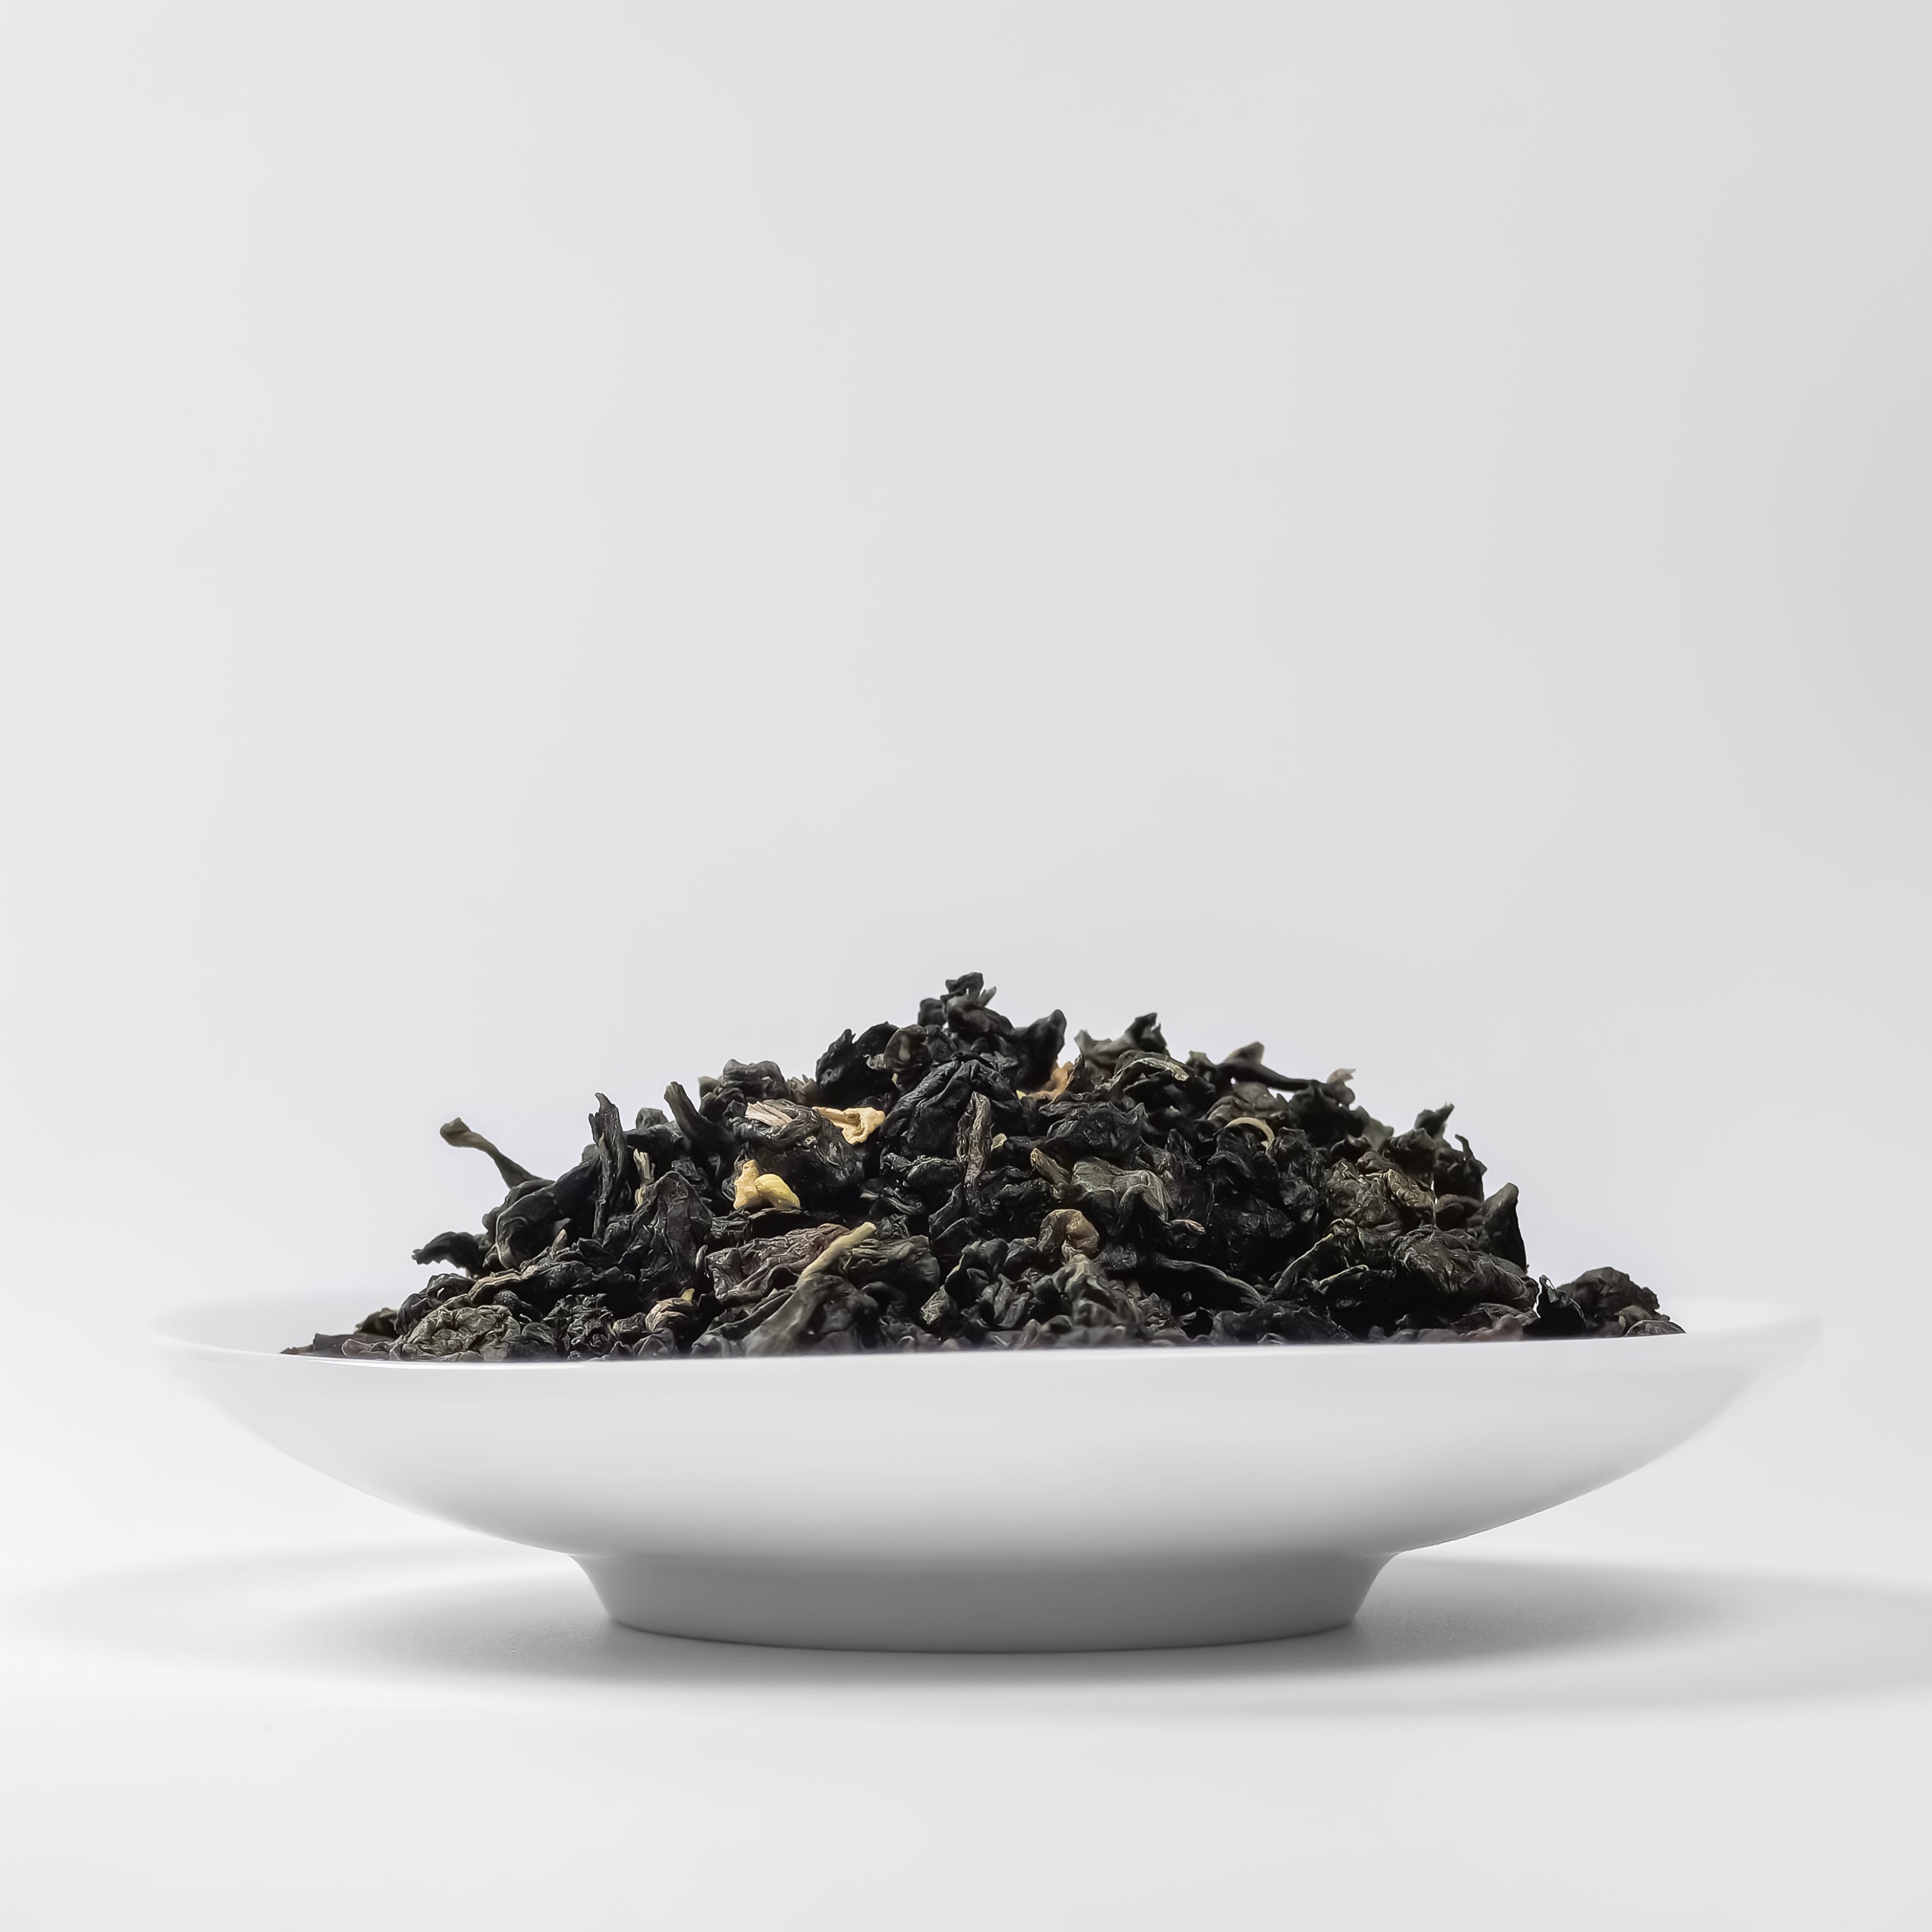 Osmanthus Oolong Tea